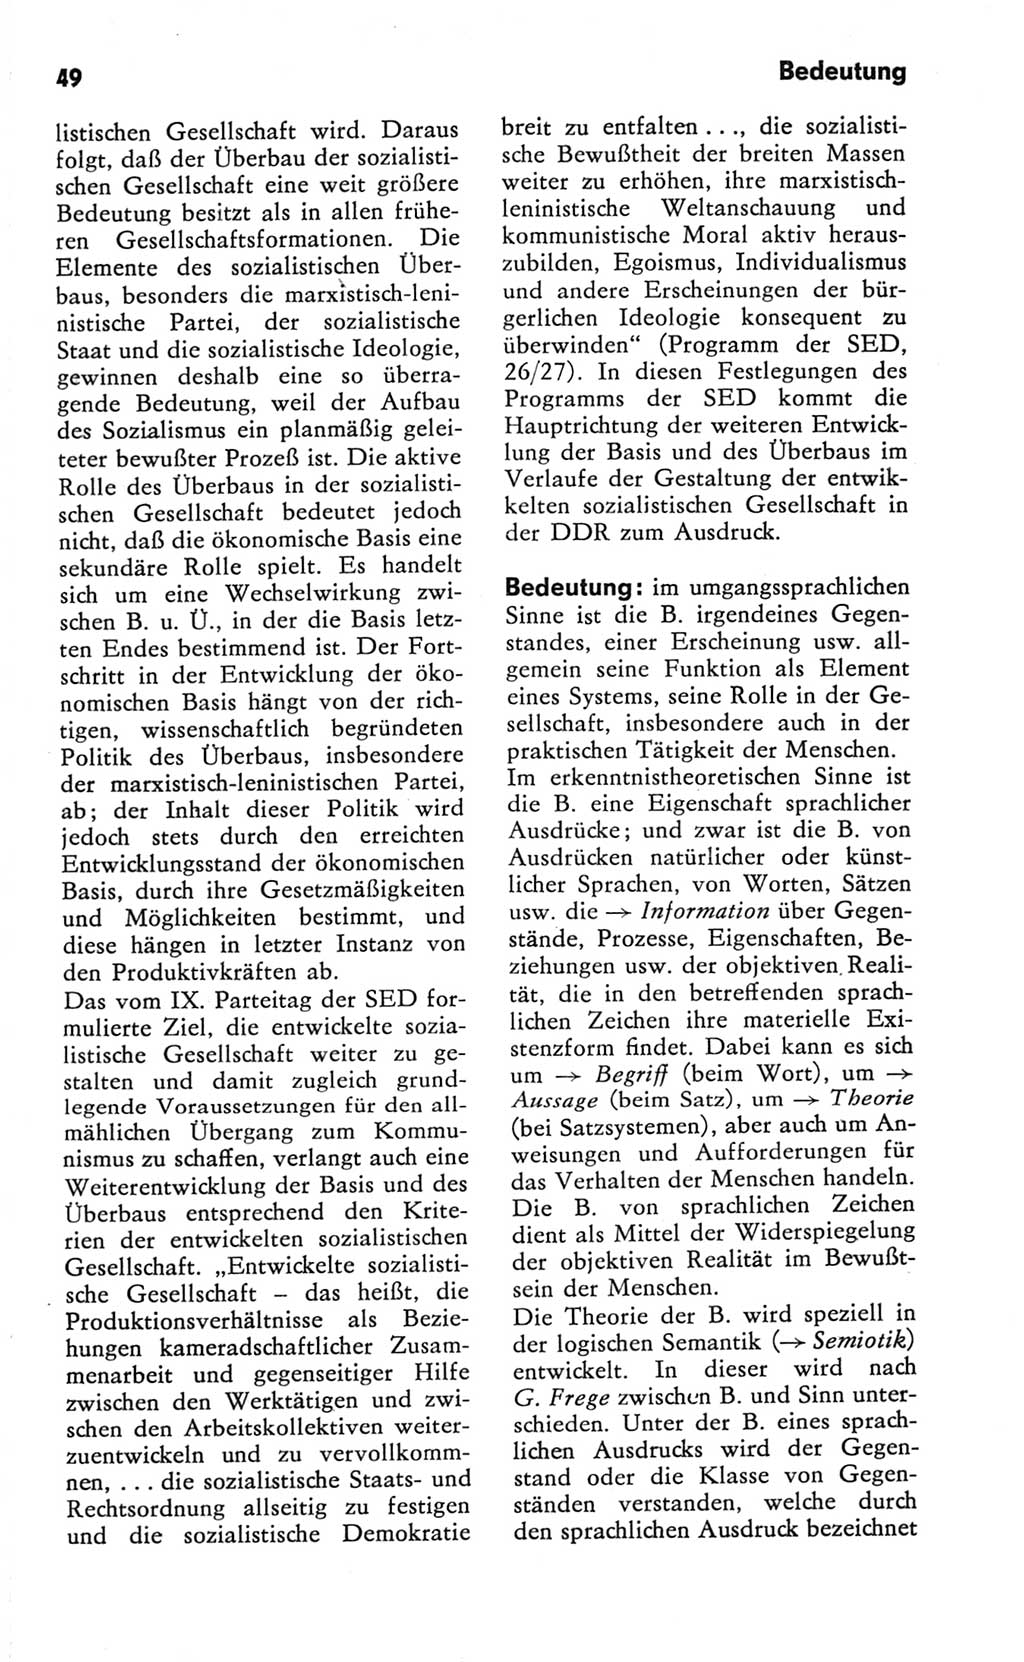 Kleines Wörterbuch der marxistisch-leninistischen Philosophie [Deutsche Demokratische Republik (DDR)] 1981, Seite 49 (Kl. Wb. ML Phil. DDR 1981, S. 49)